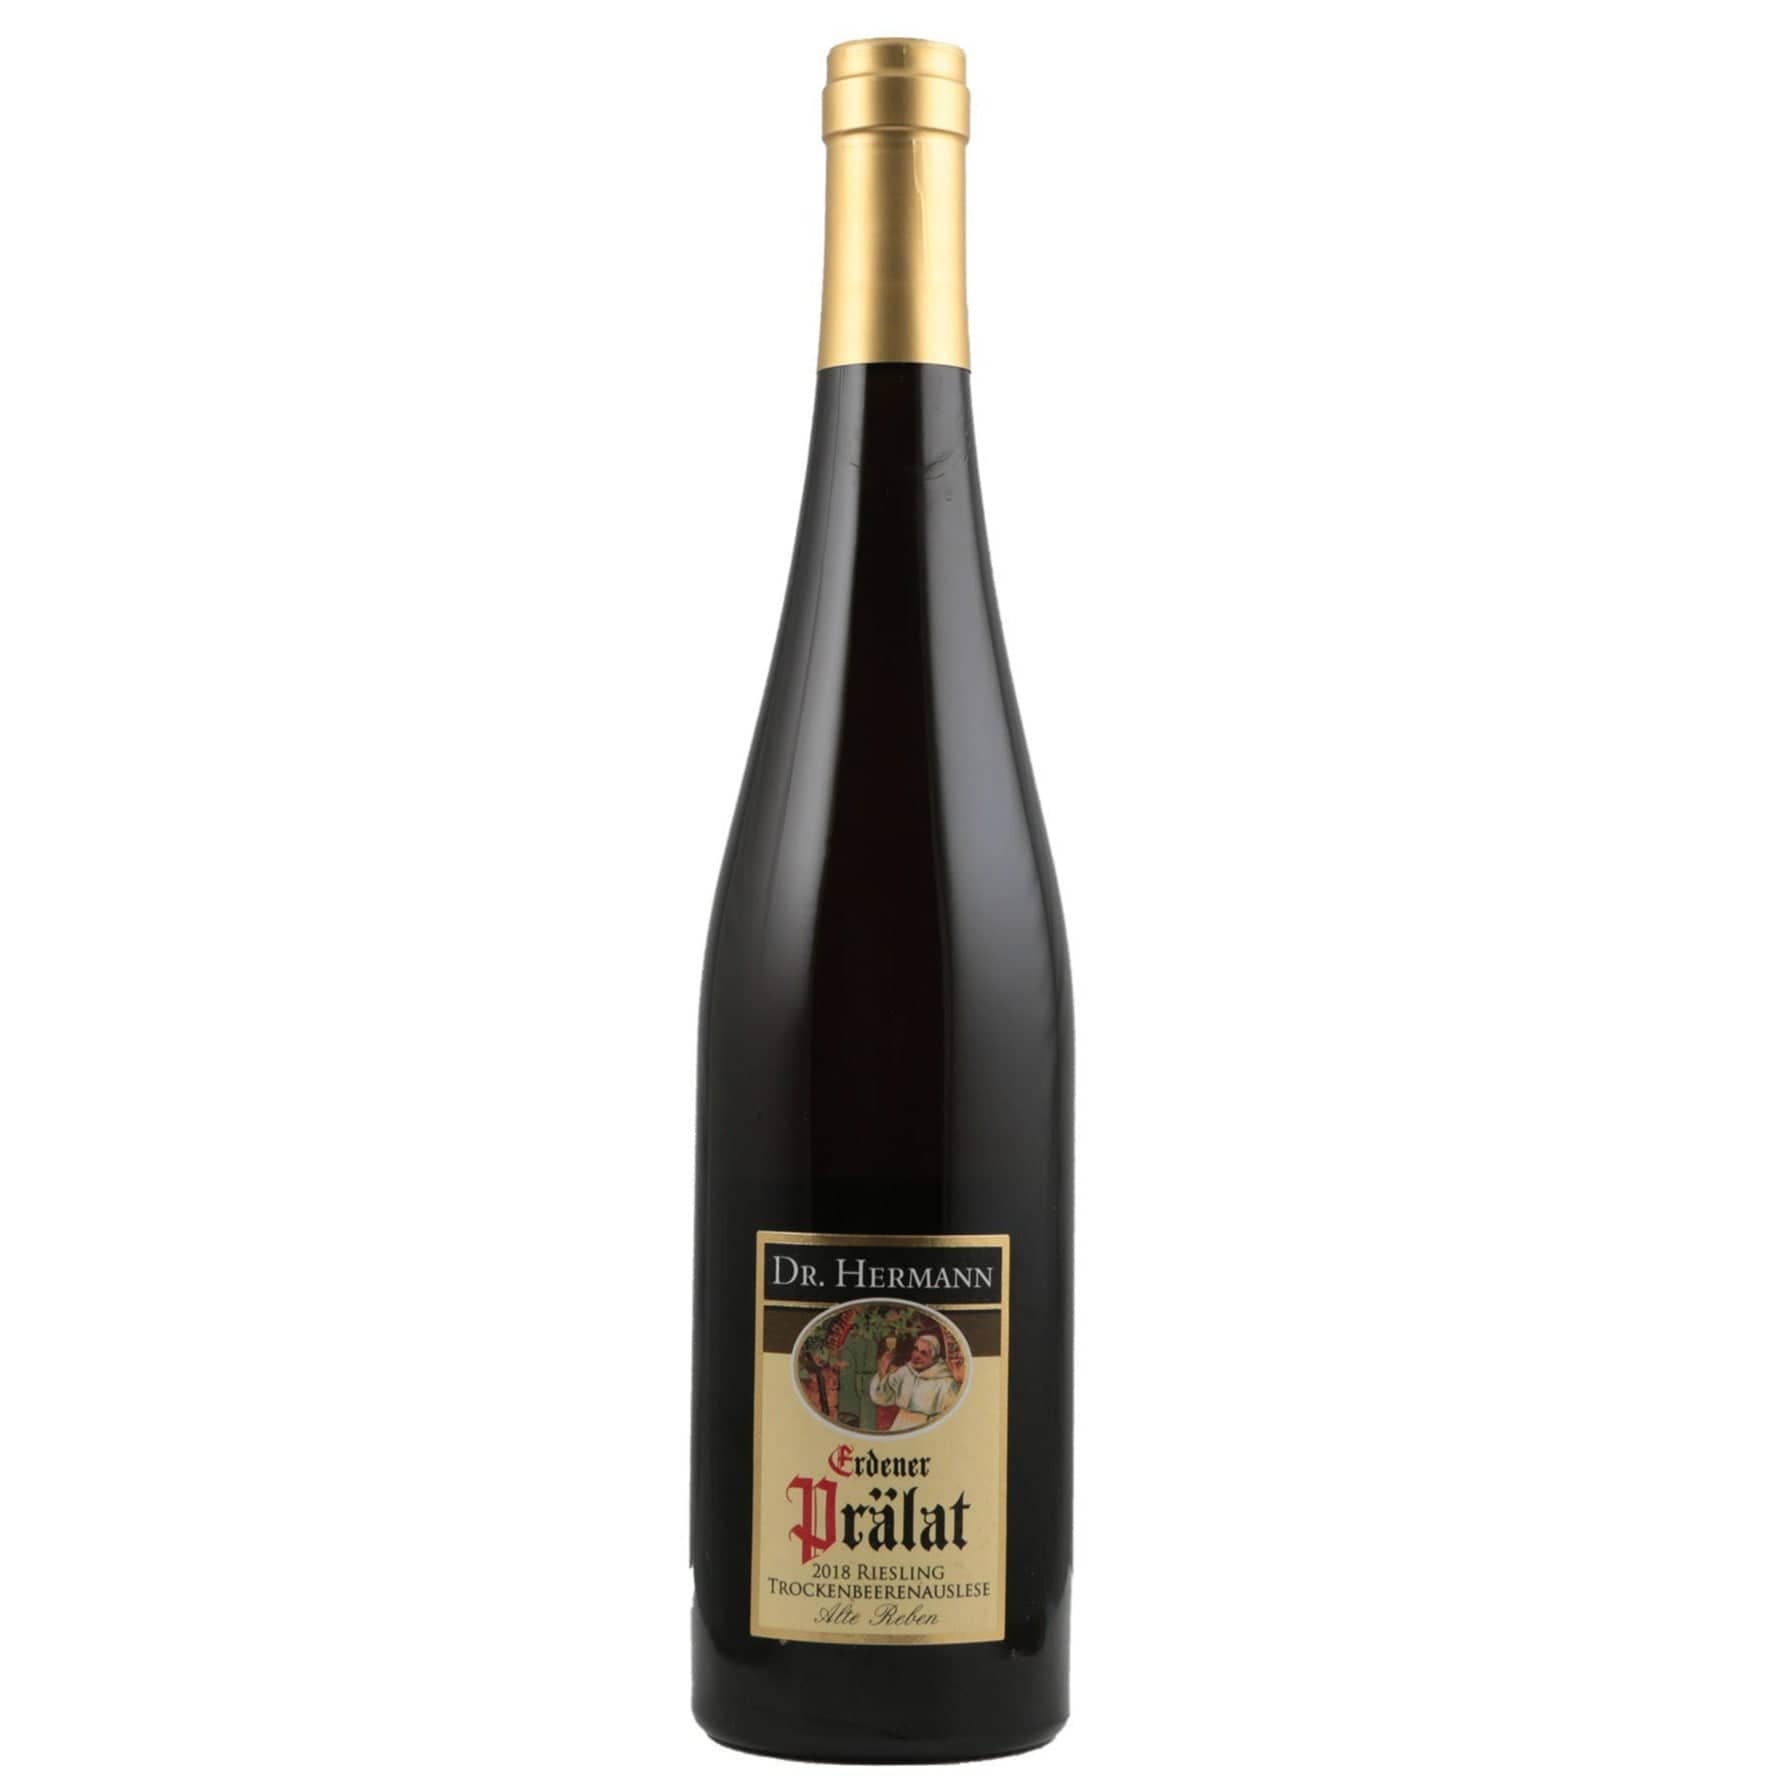 Single bottle of White wine Dr. Hermann, Erdener Pralat Trockenbeerenauslese Alte Reben Goldkapsel, Erden, 2018 100% Riesling